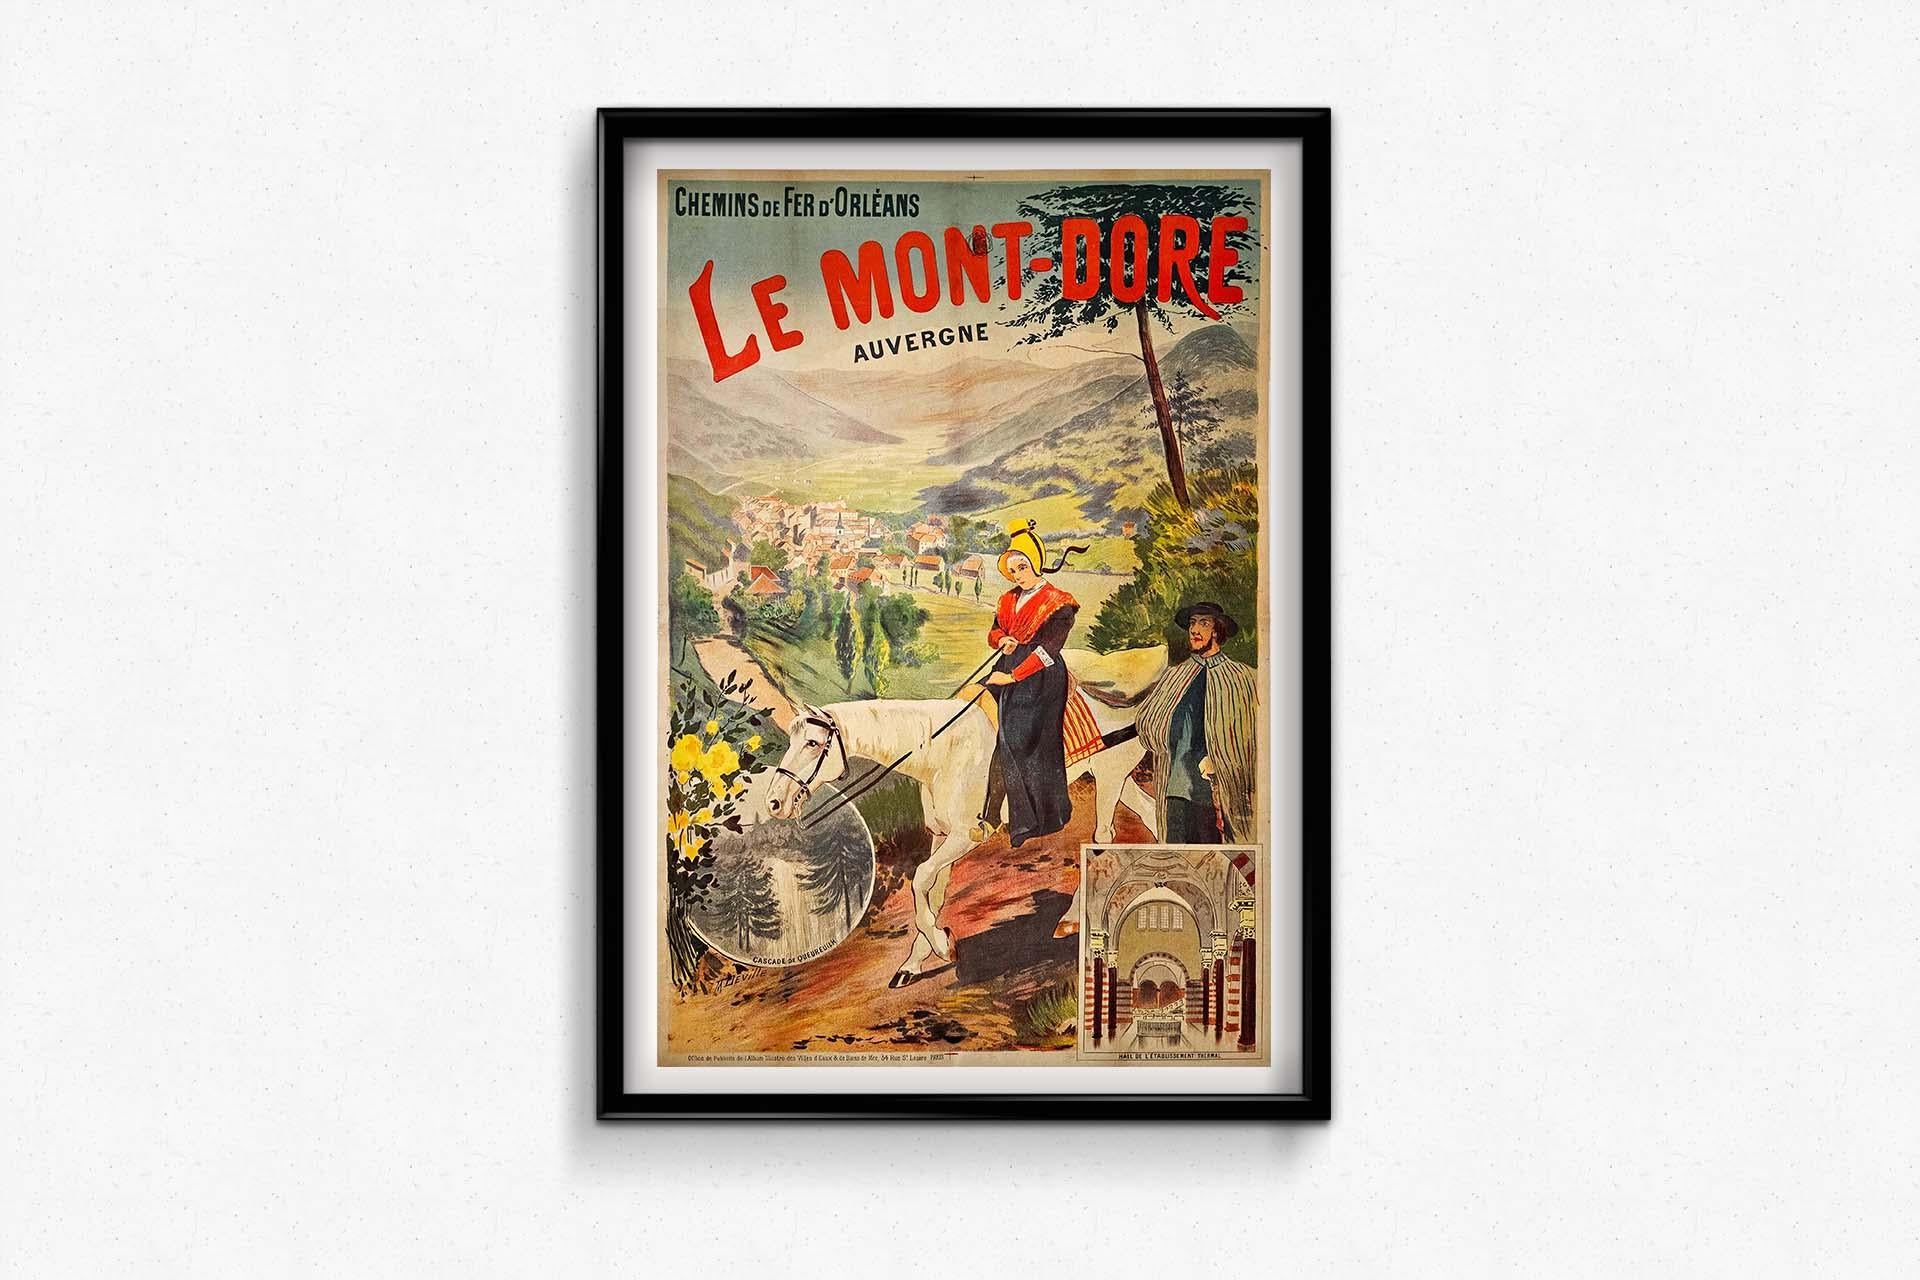 Devilles Originalplakat für Chemins de fer d'Orléans, das Le Mont-Dore in der Auvergne mit der faszinierenden Cascade de Queureuilh und der Grandeur des Thermalbads zeigt, entfaltet sich als visuelle Symphonie, die die Grenzen der reinen Werbung